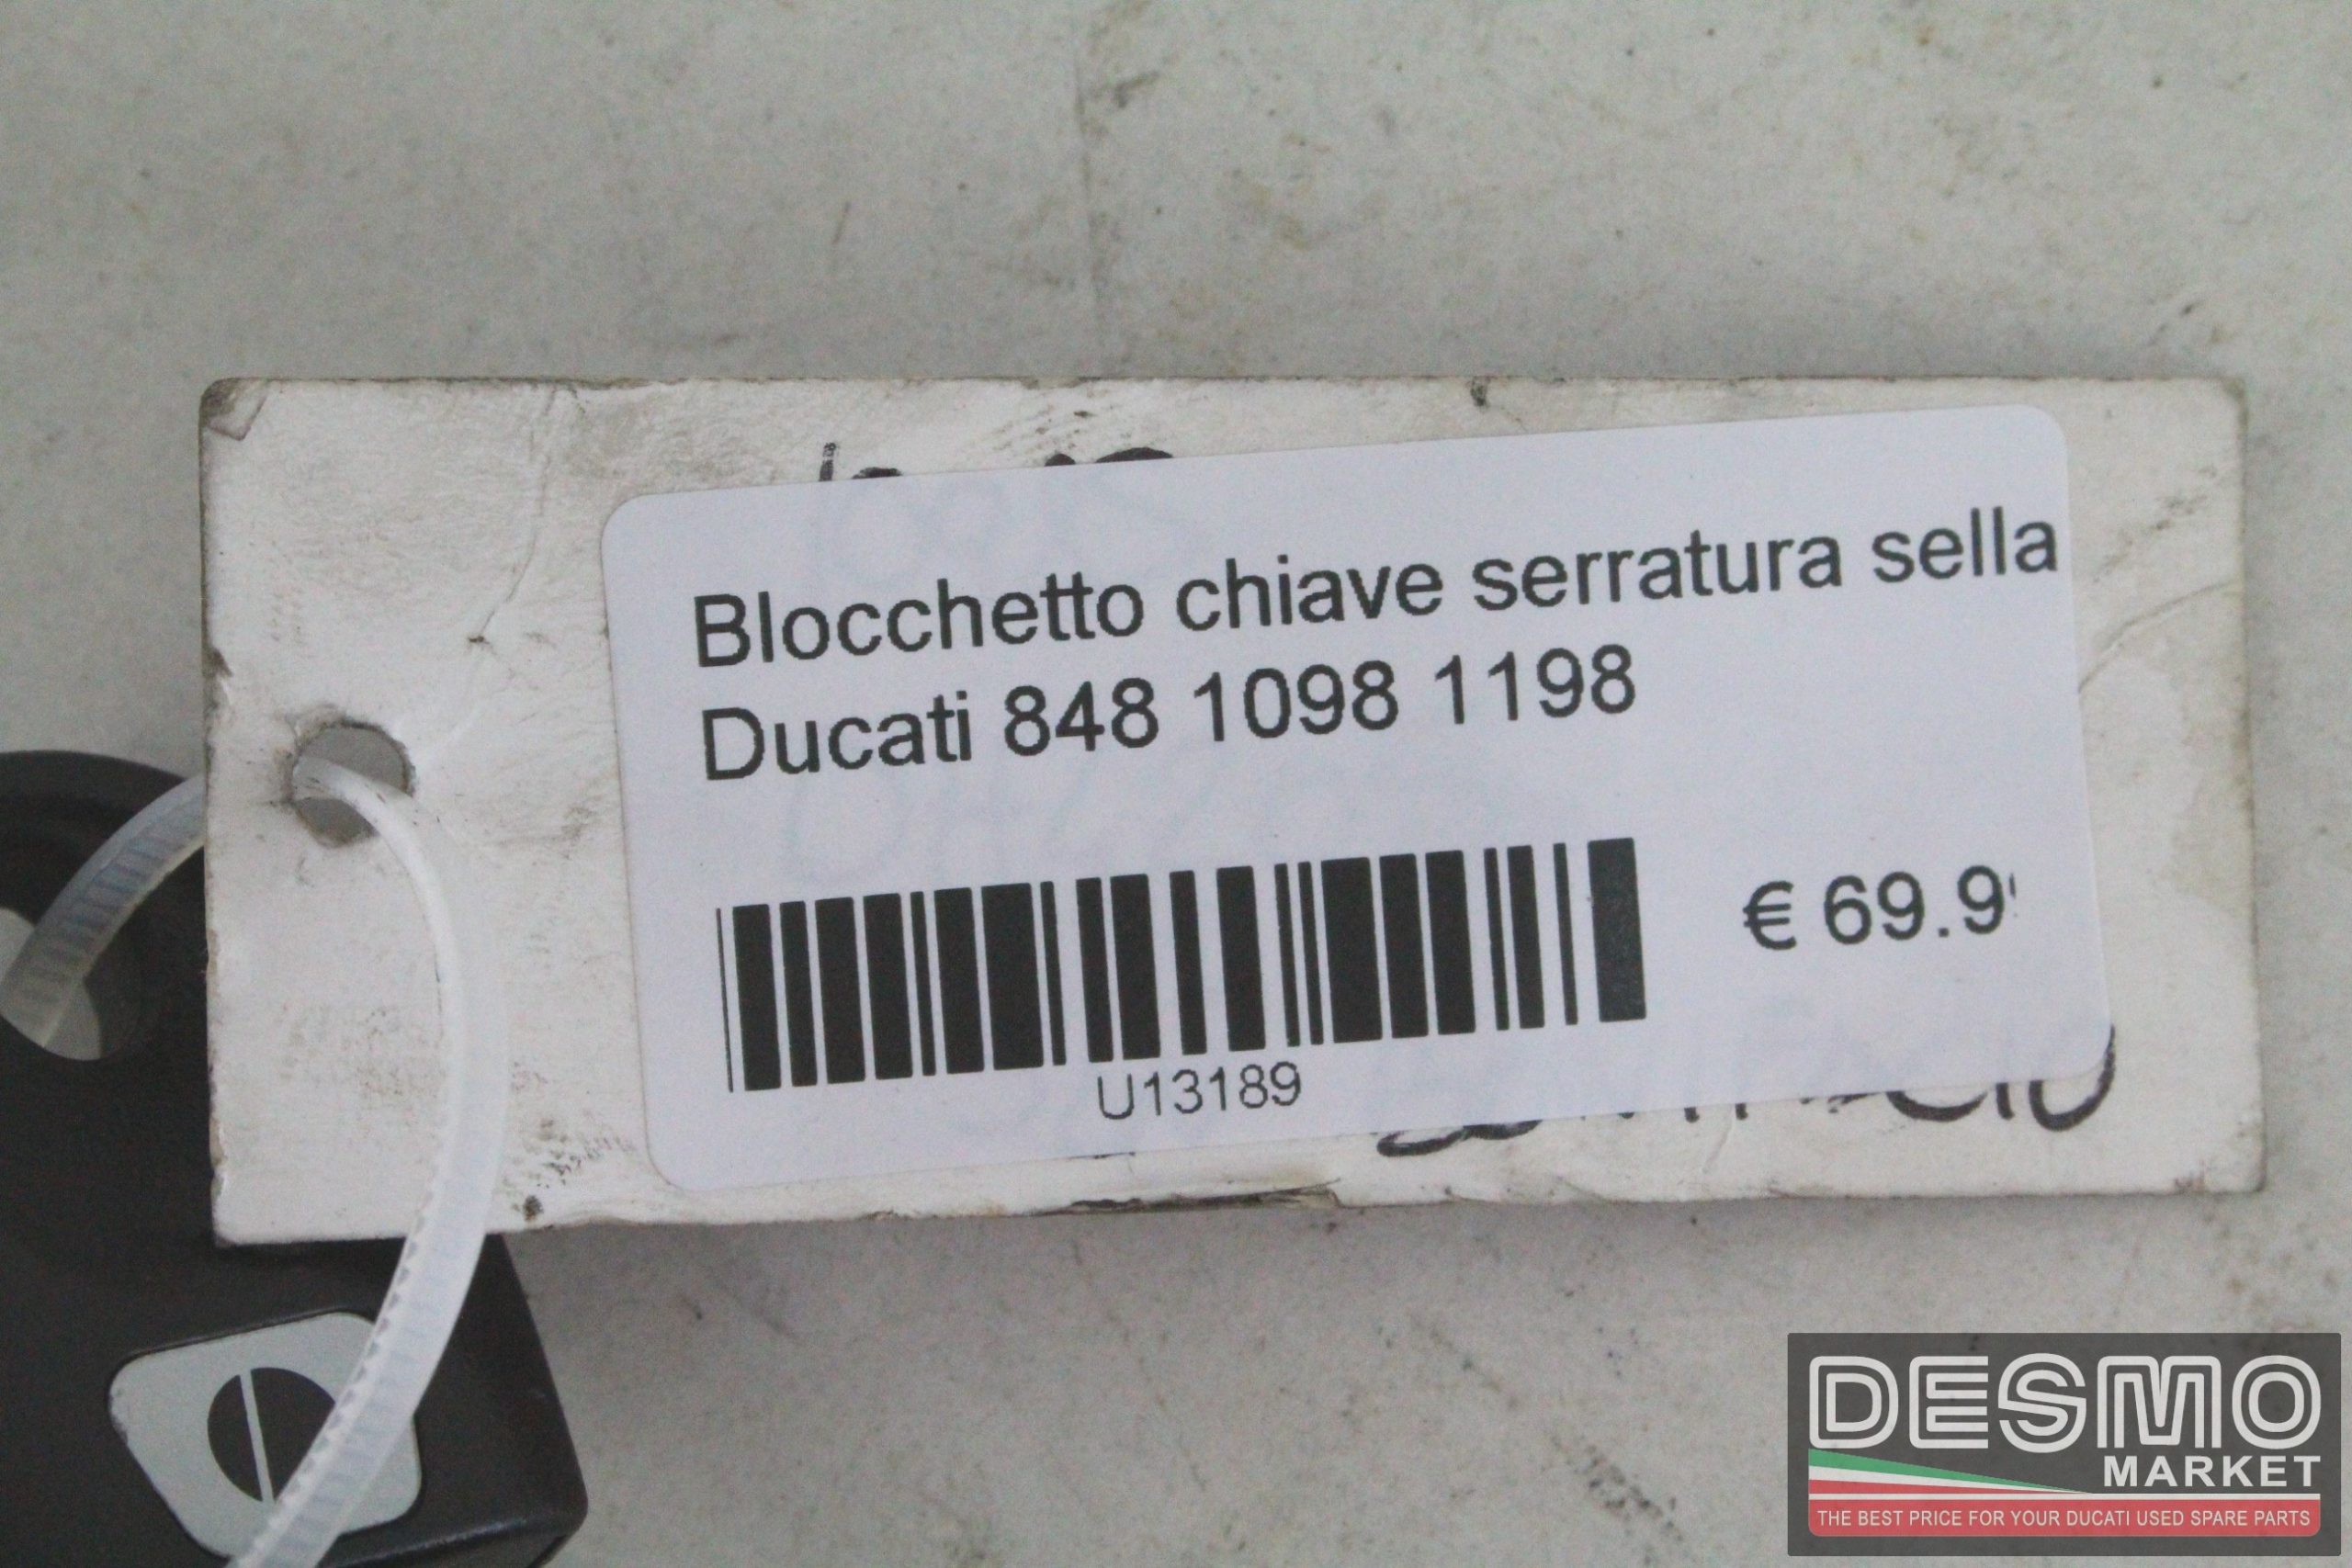 Blocchetto chiave serratura sella Ducati 848 1098 1198